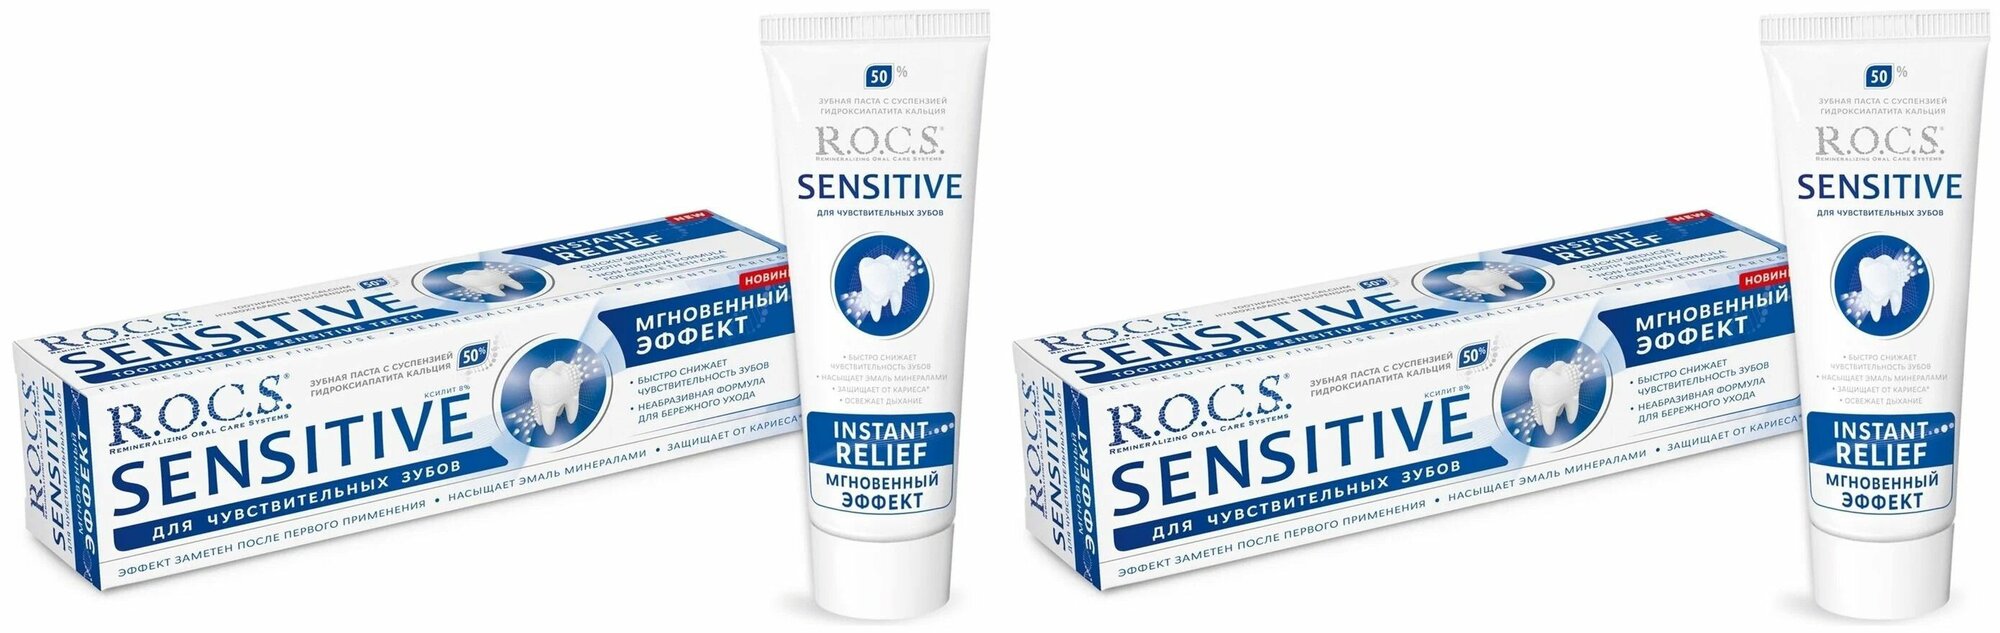 R.O.C.S. Зубная паста Sensitive мгновенный эффект, 94 грамма, 2 штуки.